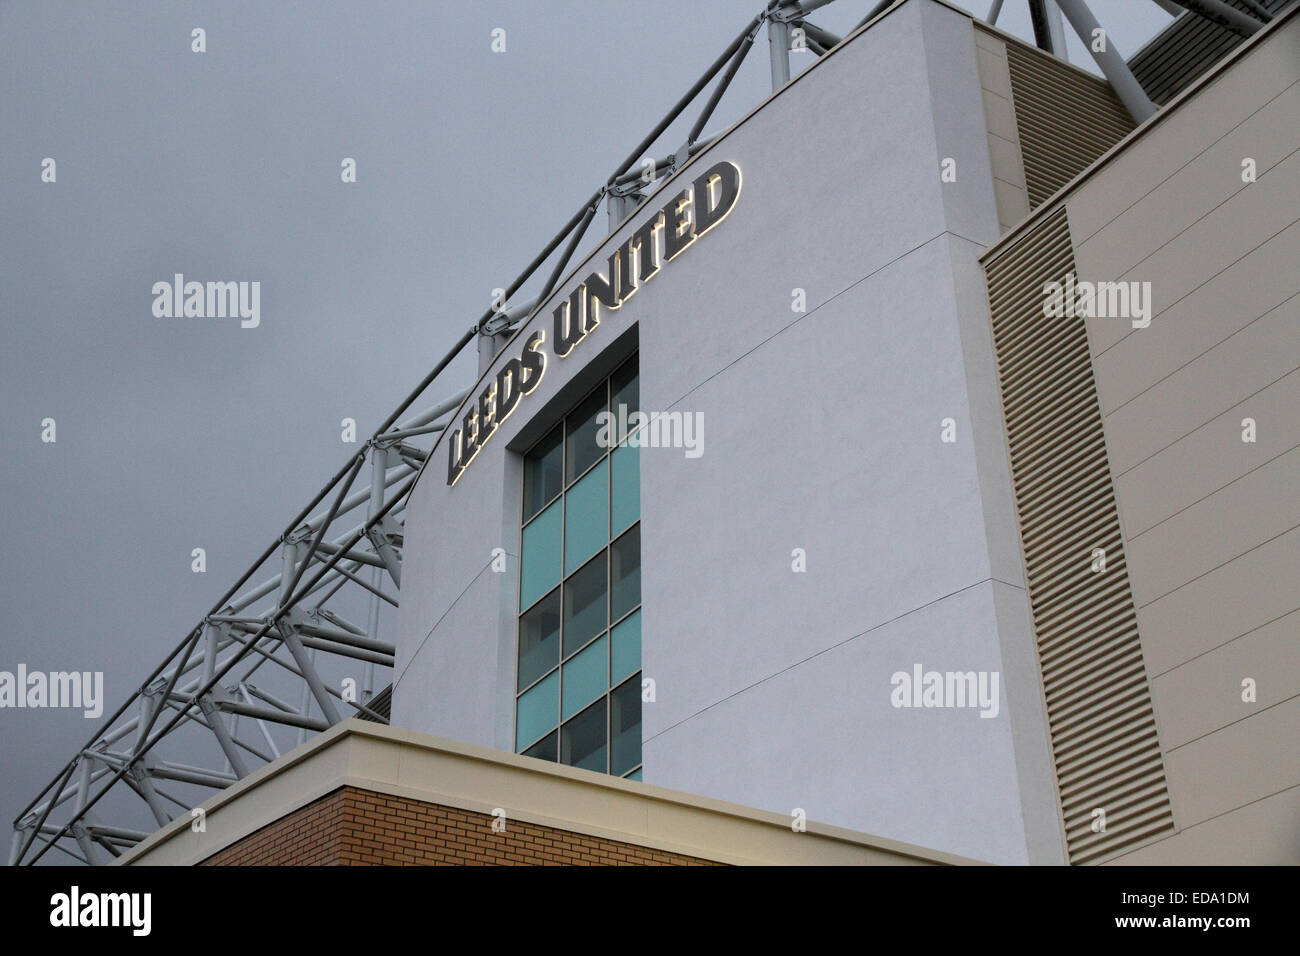 Leeds United Football ground, Elland Road, Leeds Stock Photo